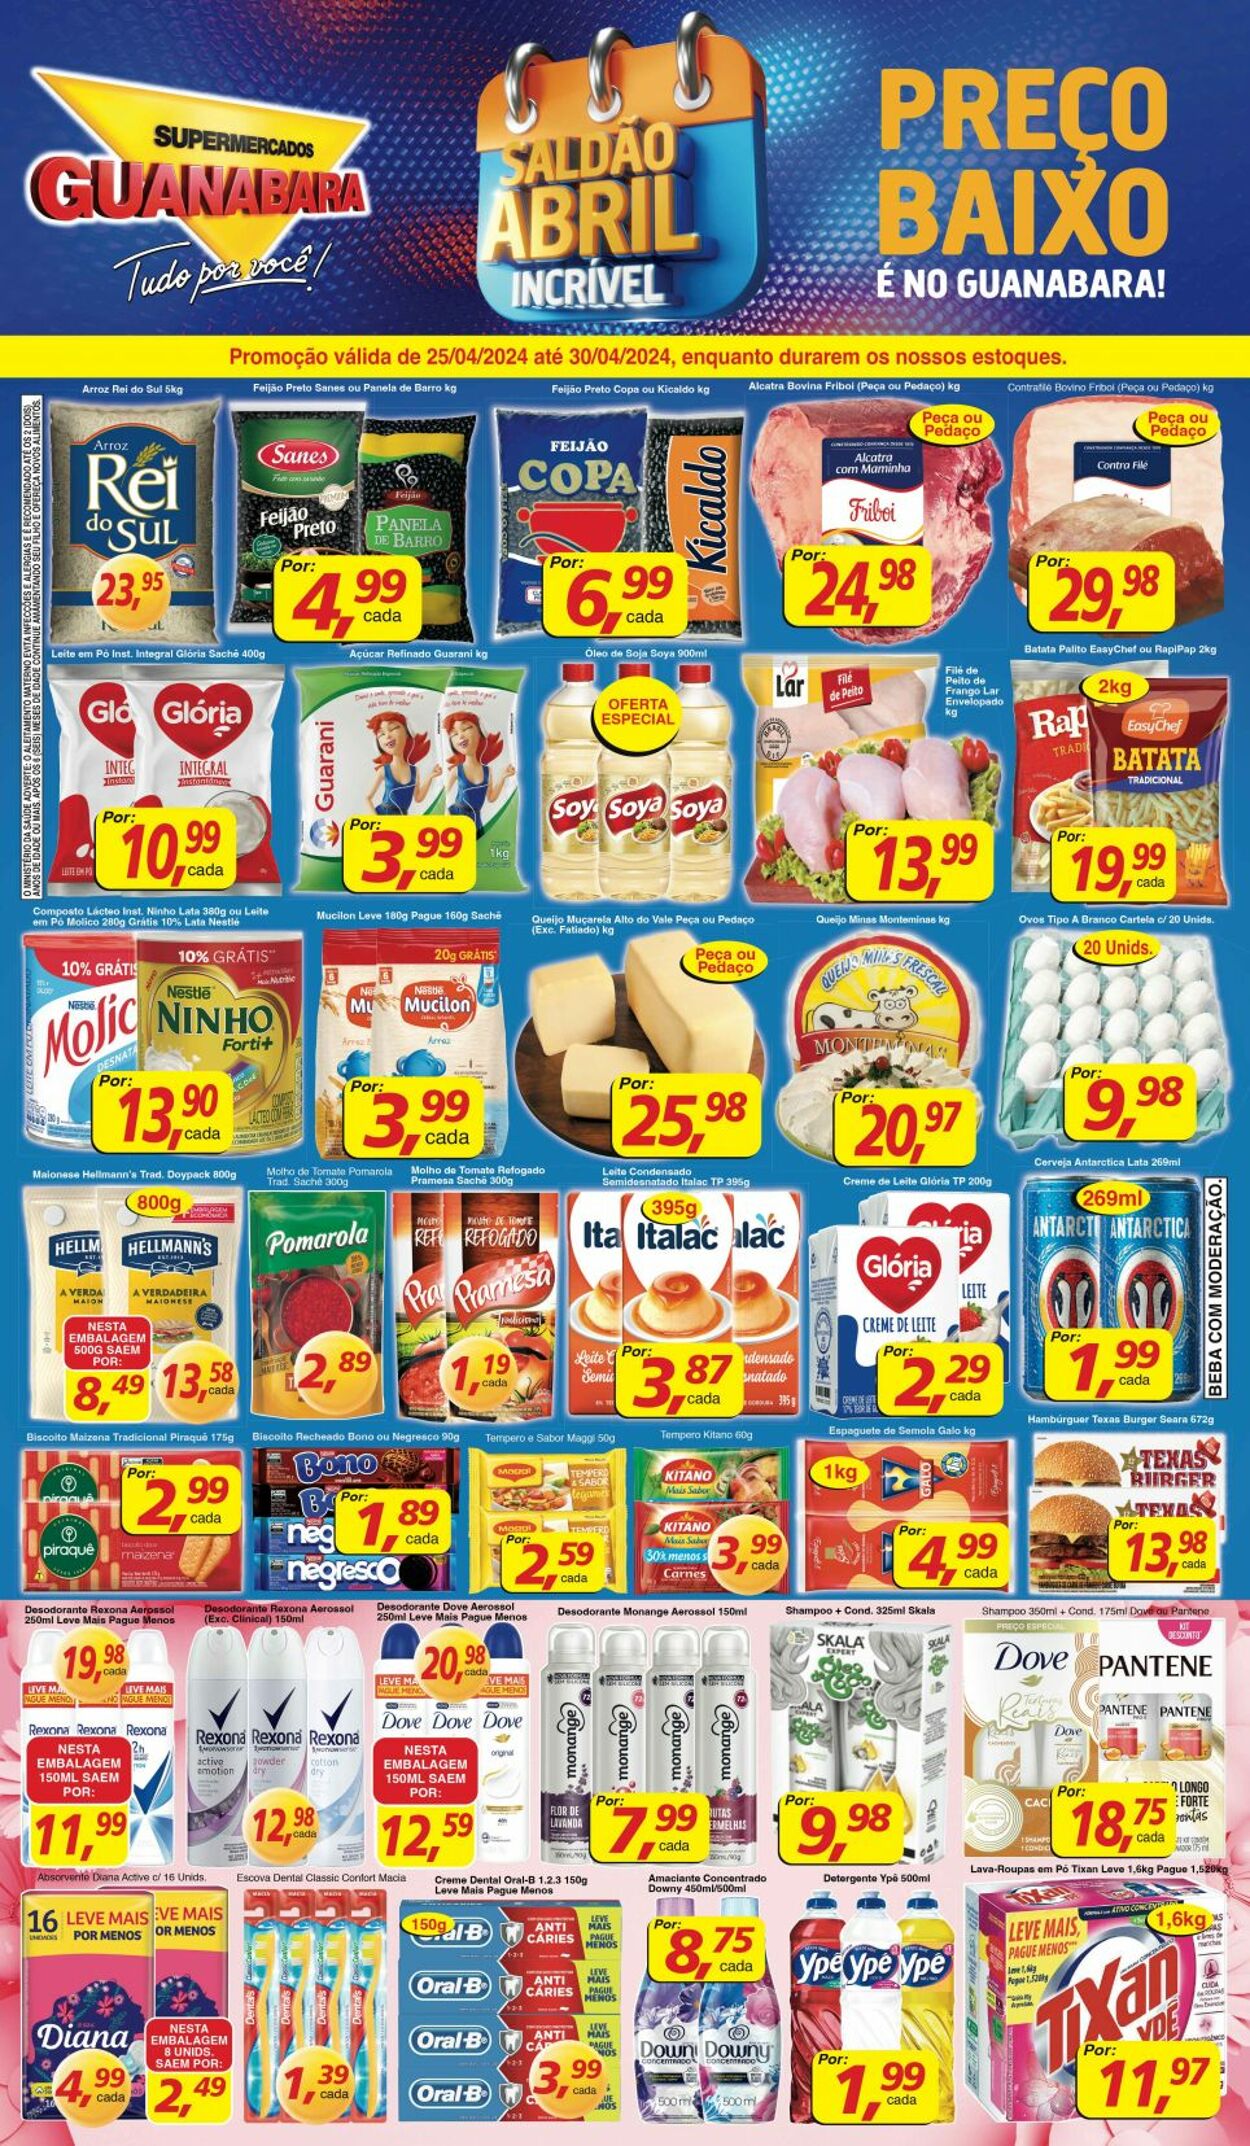 Supermercados Guanabara Folhetos promocionais